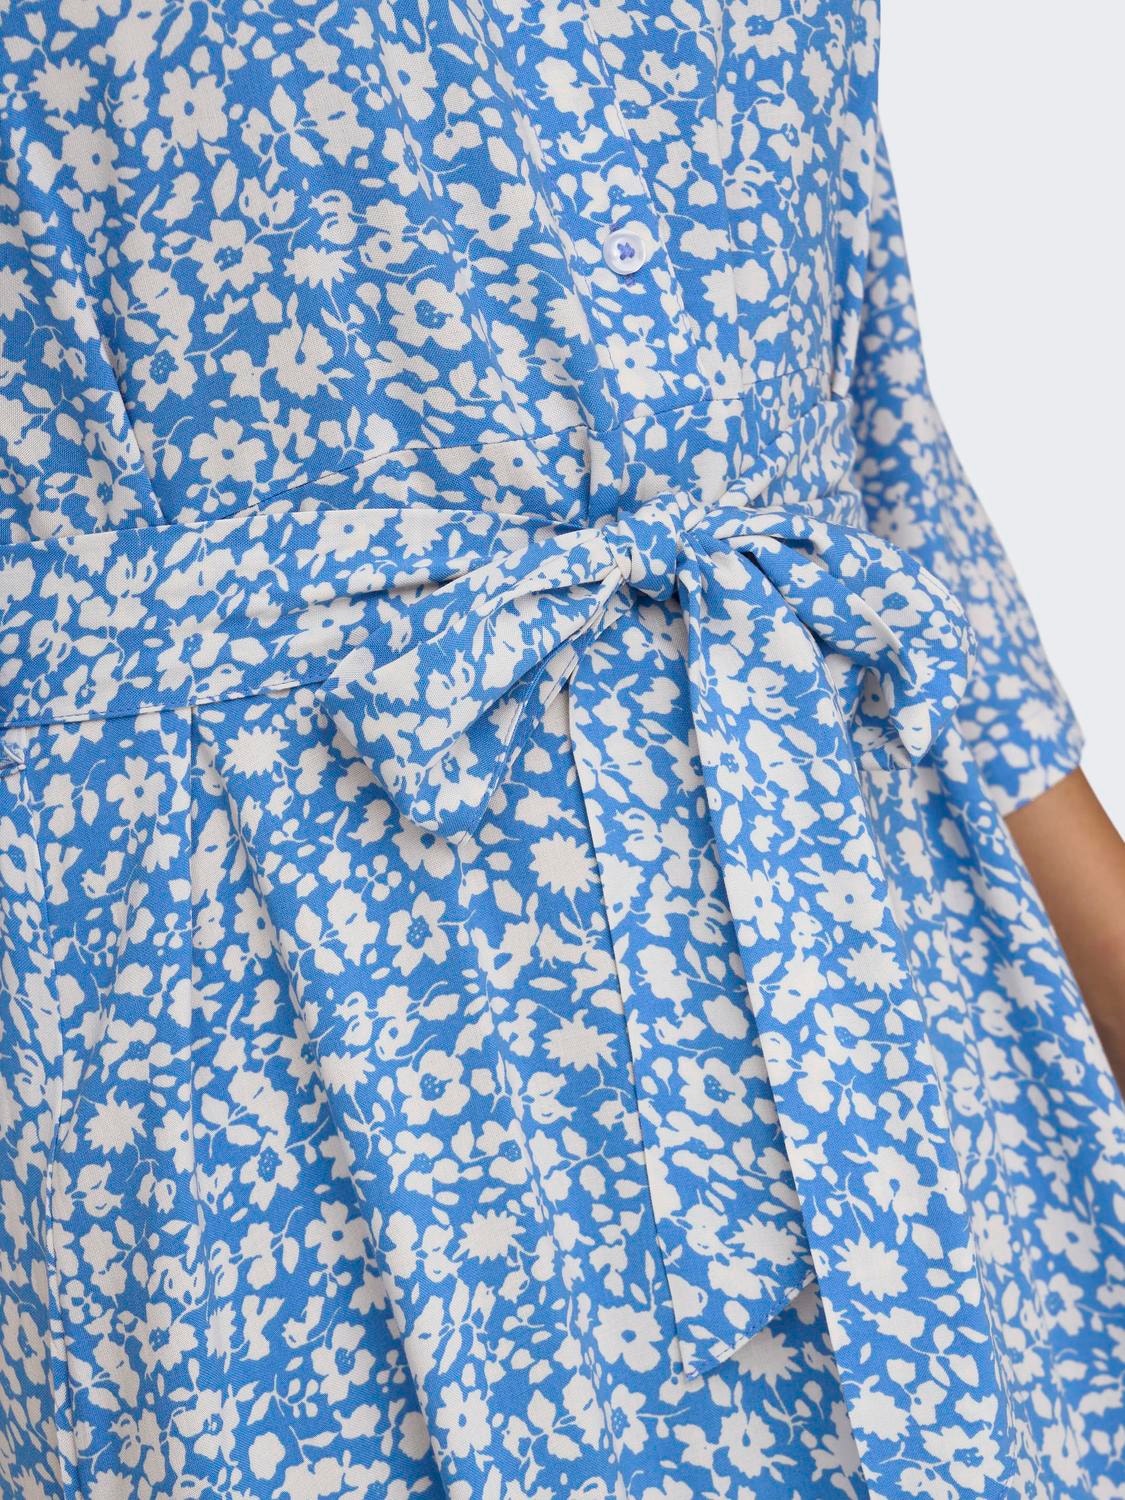 ONLY Printed midi Shirt dress -Campanula - 15200236